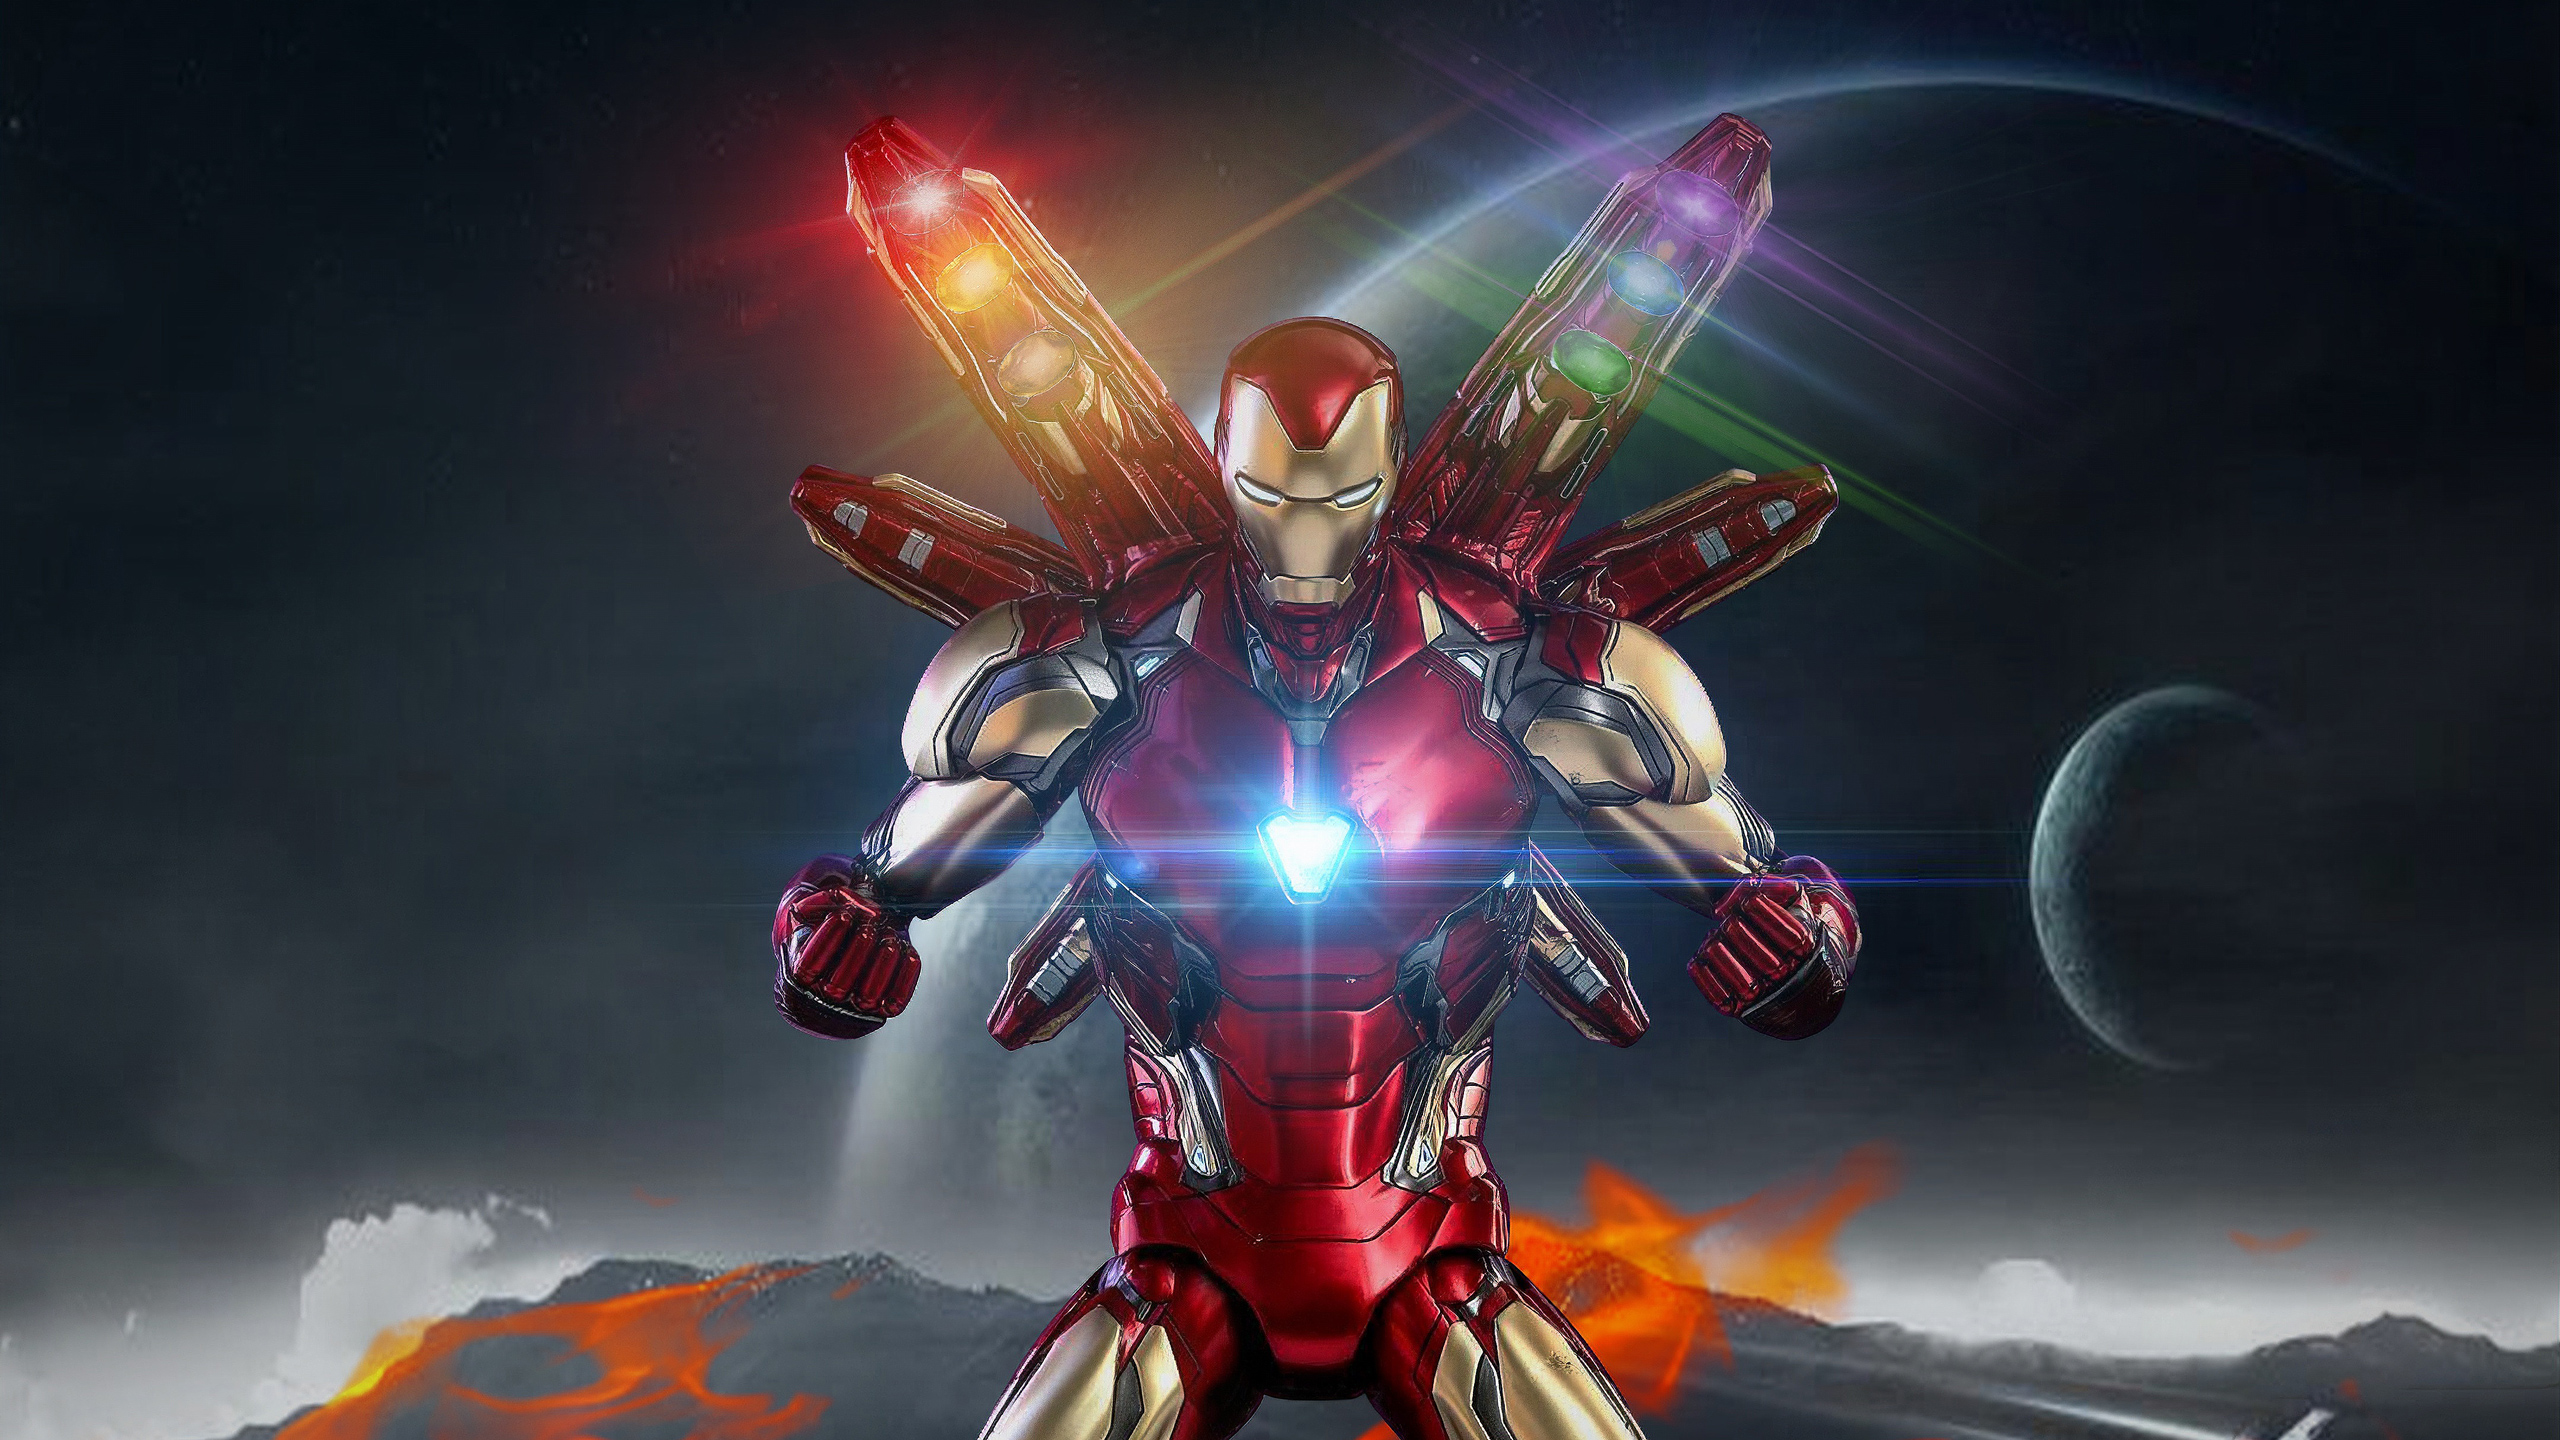 1280x1024 Avengers Endgame Iron  Man  New  1280x1024 